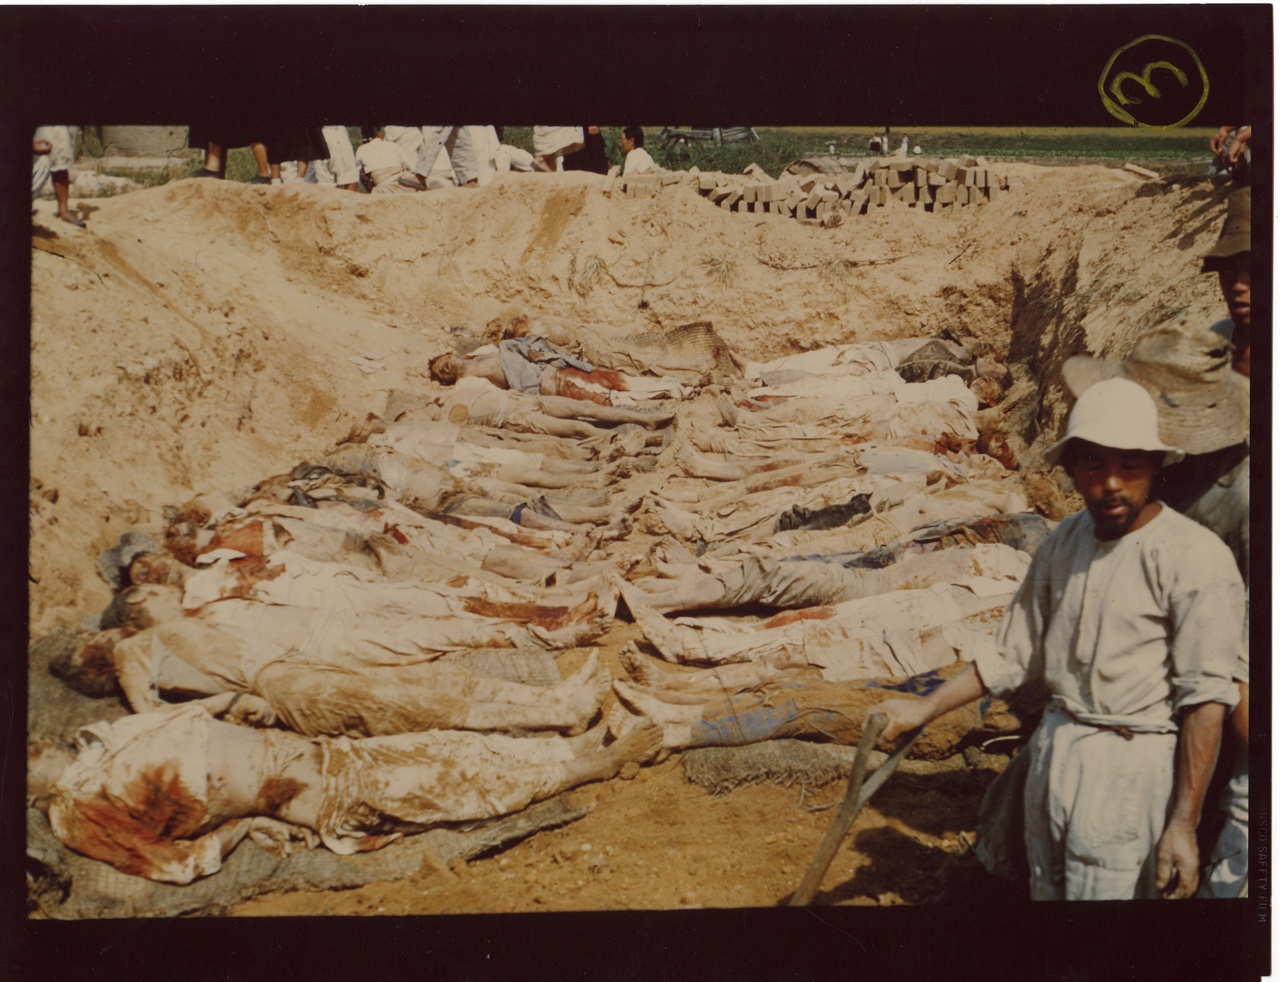  1950. 9. 29. 전주. 주민들이 대량 학살된 시신을 발굴하고 있다.